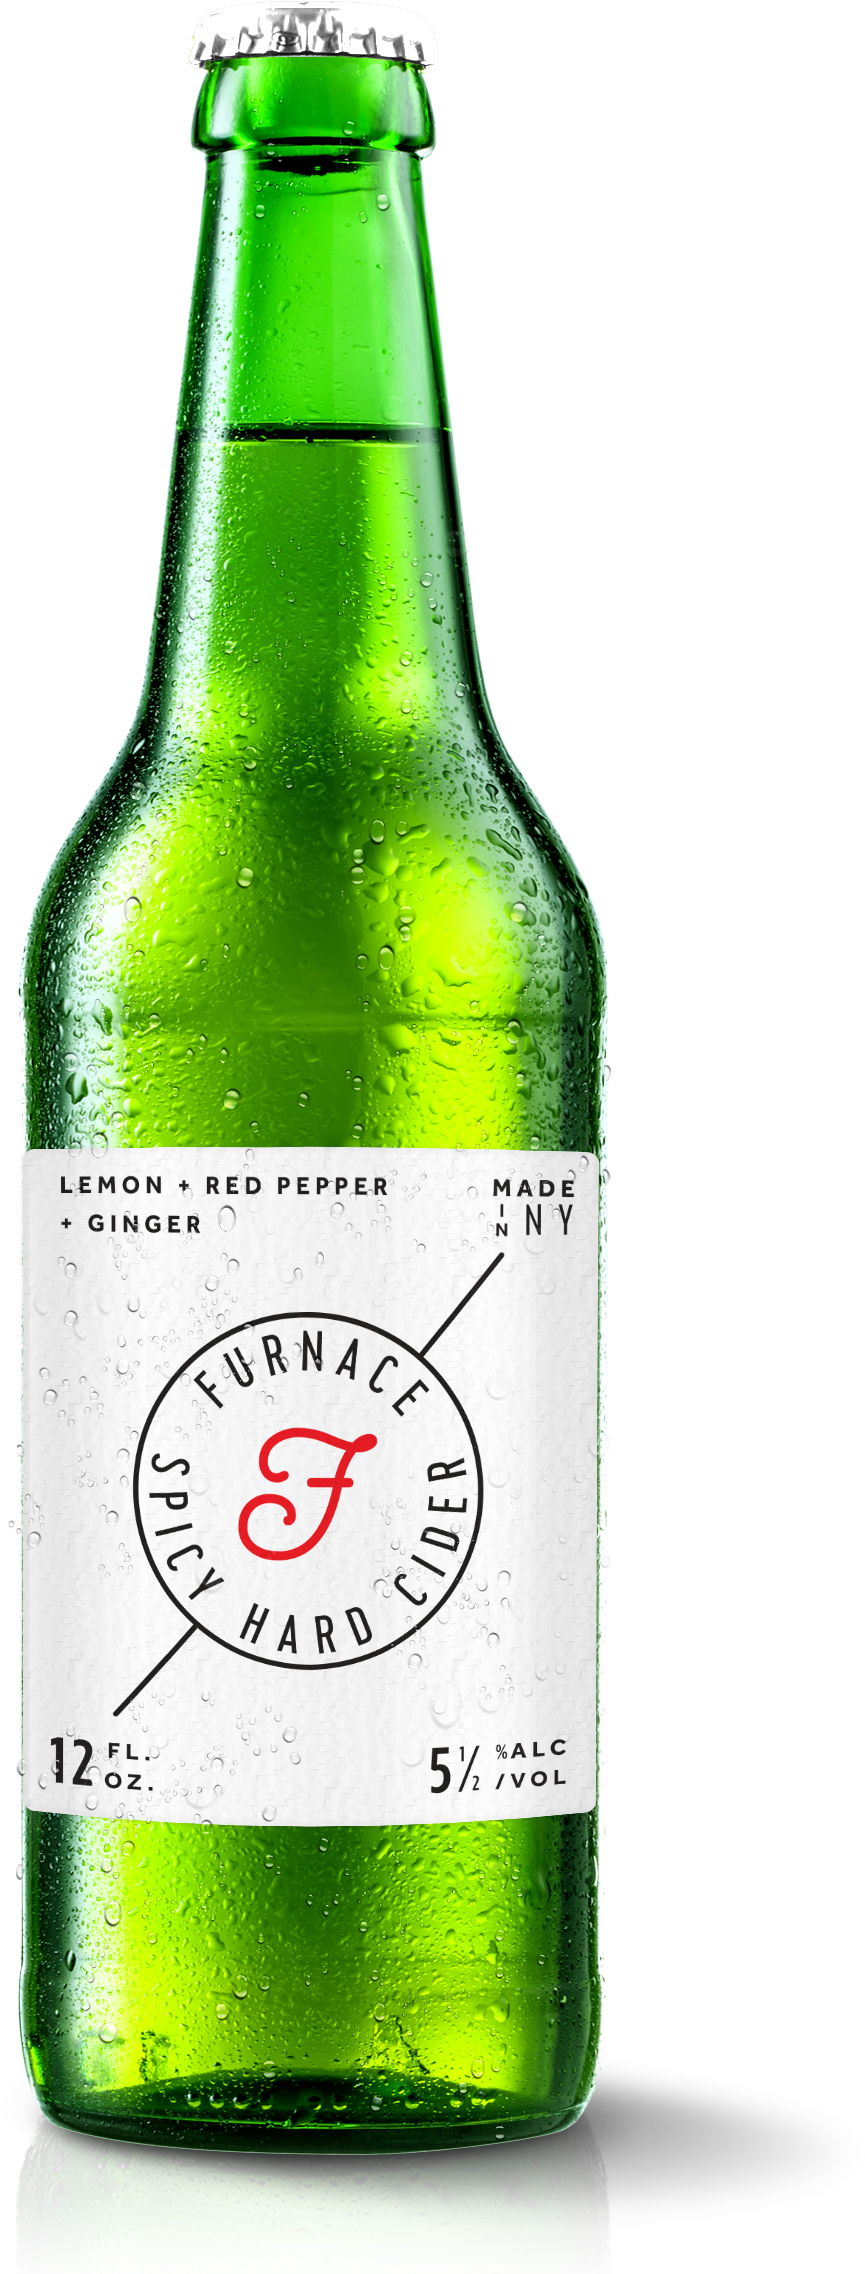 Download A Large Image Of Furnace Cider Bottle And - Beer Bottle (1200x2273)